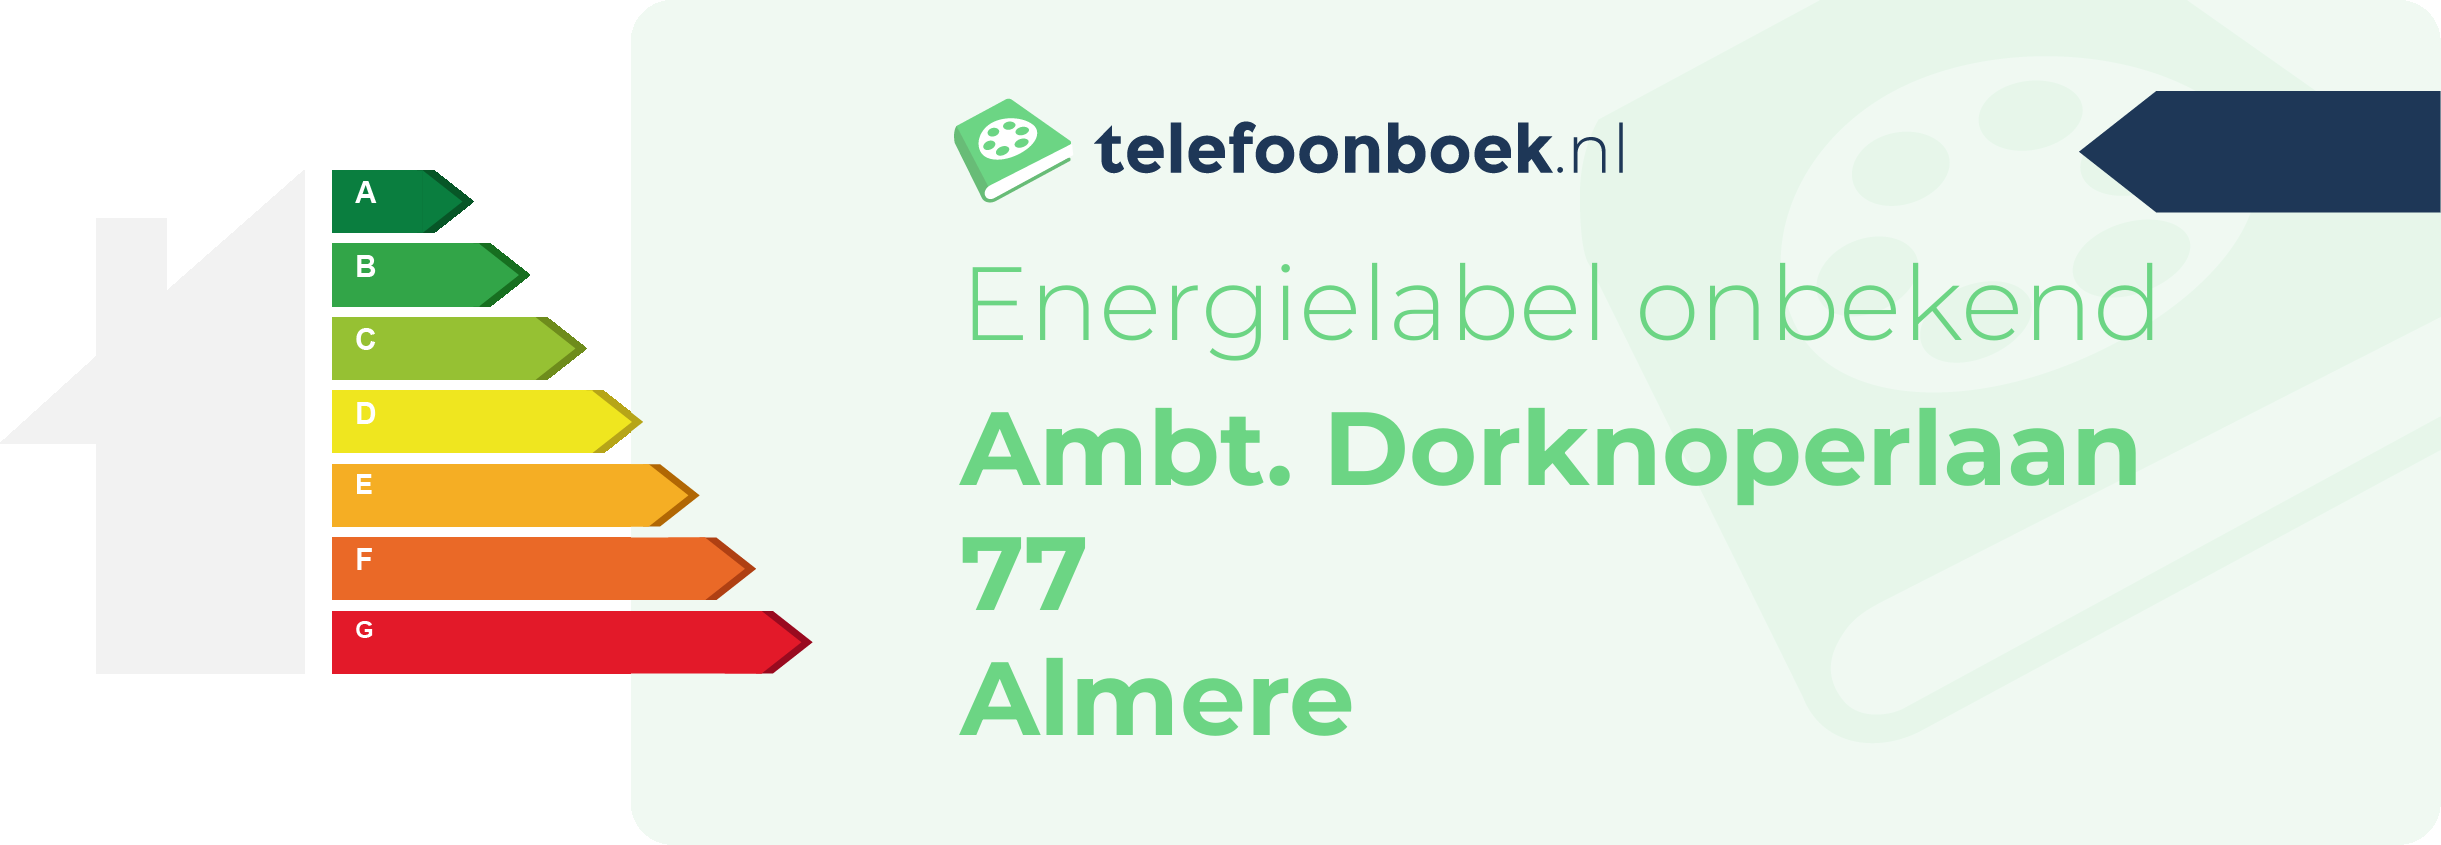 Energielabel Ambt. Dorknoperlaan 77 Almere